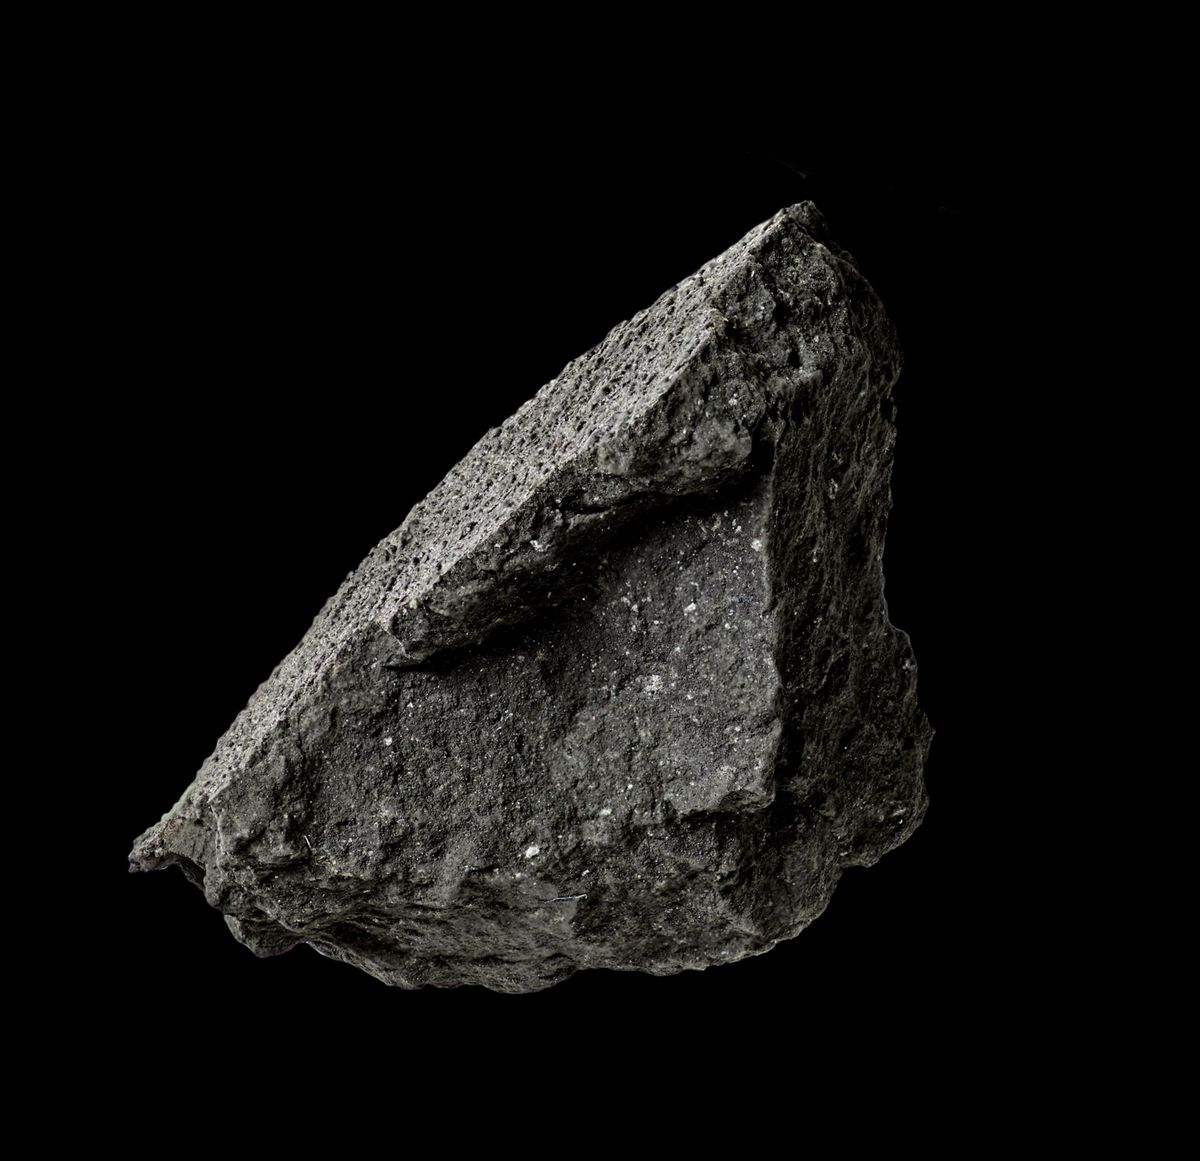 Dit brokstuk van een onlangs neergestorte meteoriet werd gevonden op een oprijlaan in het Engelse plaatsje Winchcombe De meteoriet is van een zeldzaam en oeroud type genaamd koolstofhoudend chondriet en kan wetenschappers inzicht bieden in de vroege geschiedenis van het zonnestelsel